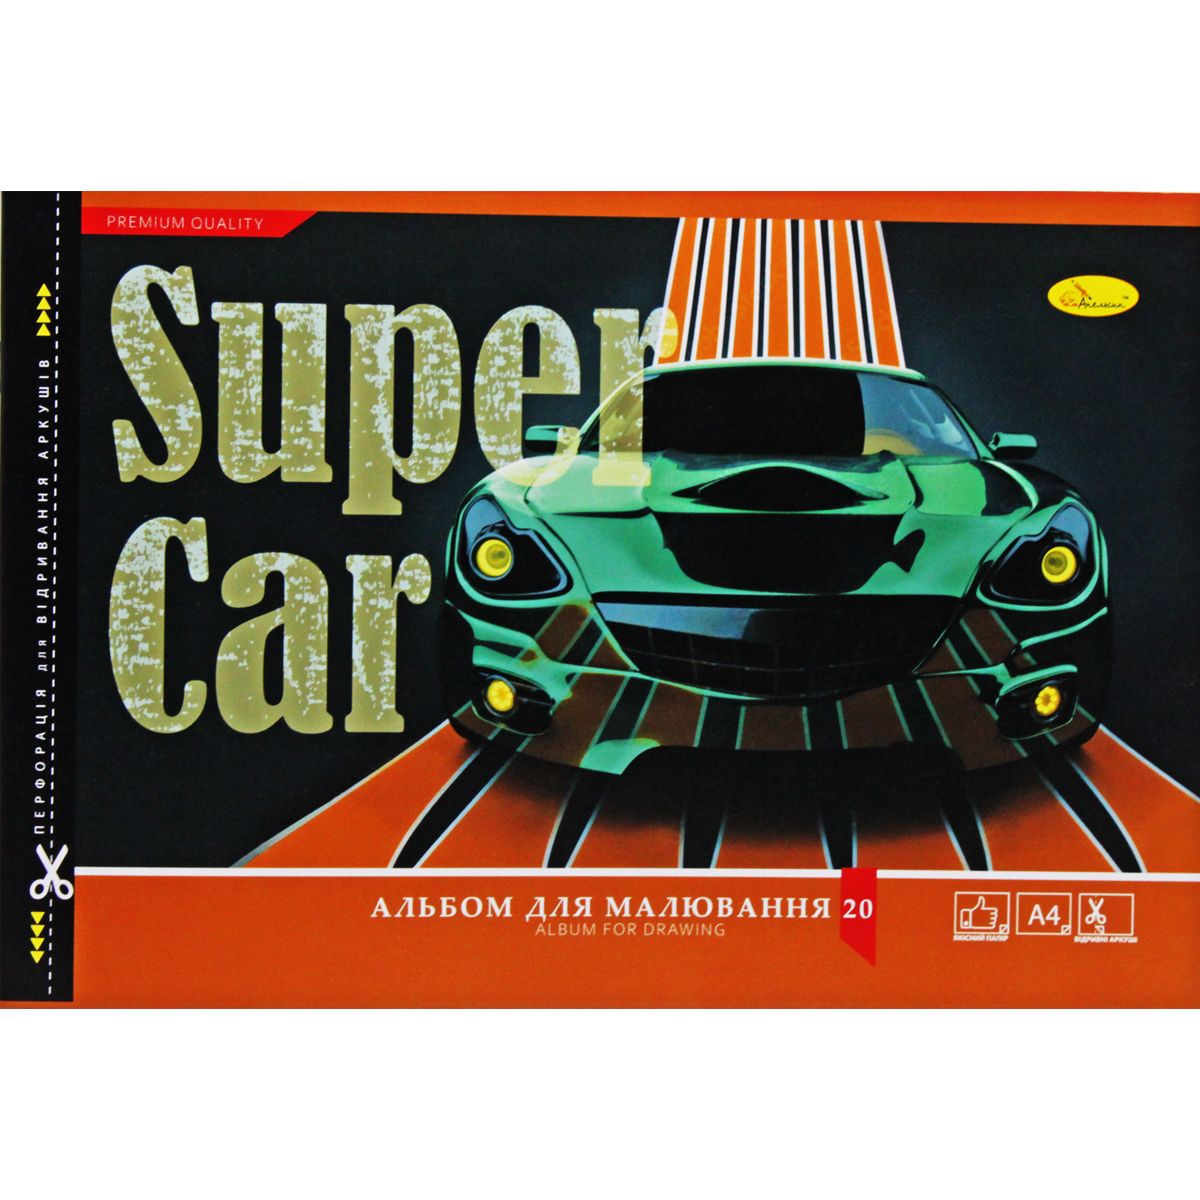 Альбом для малювання "Super Car", 20 аркушів